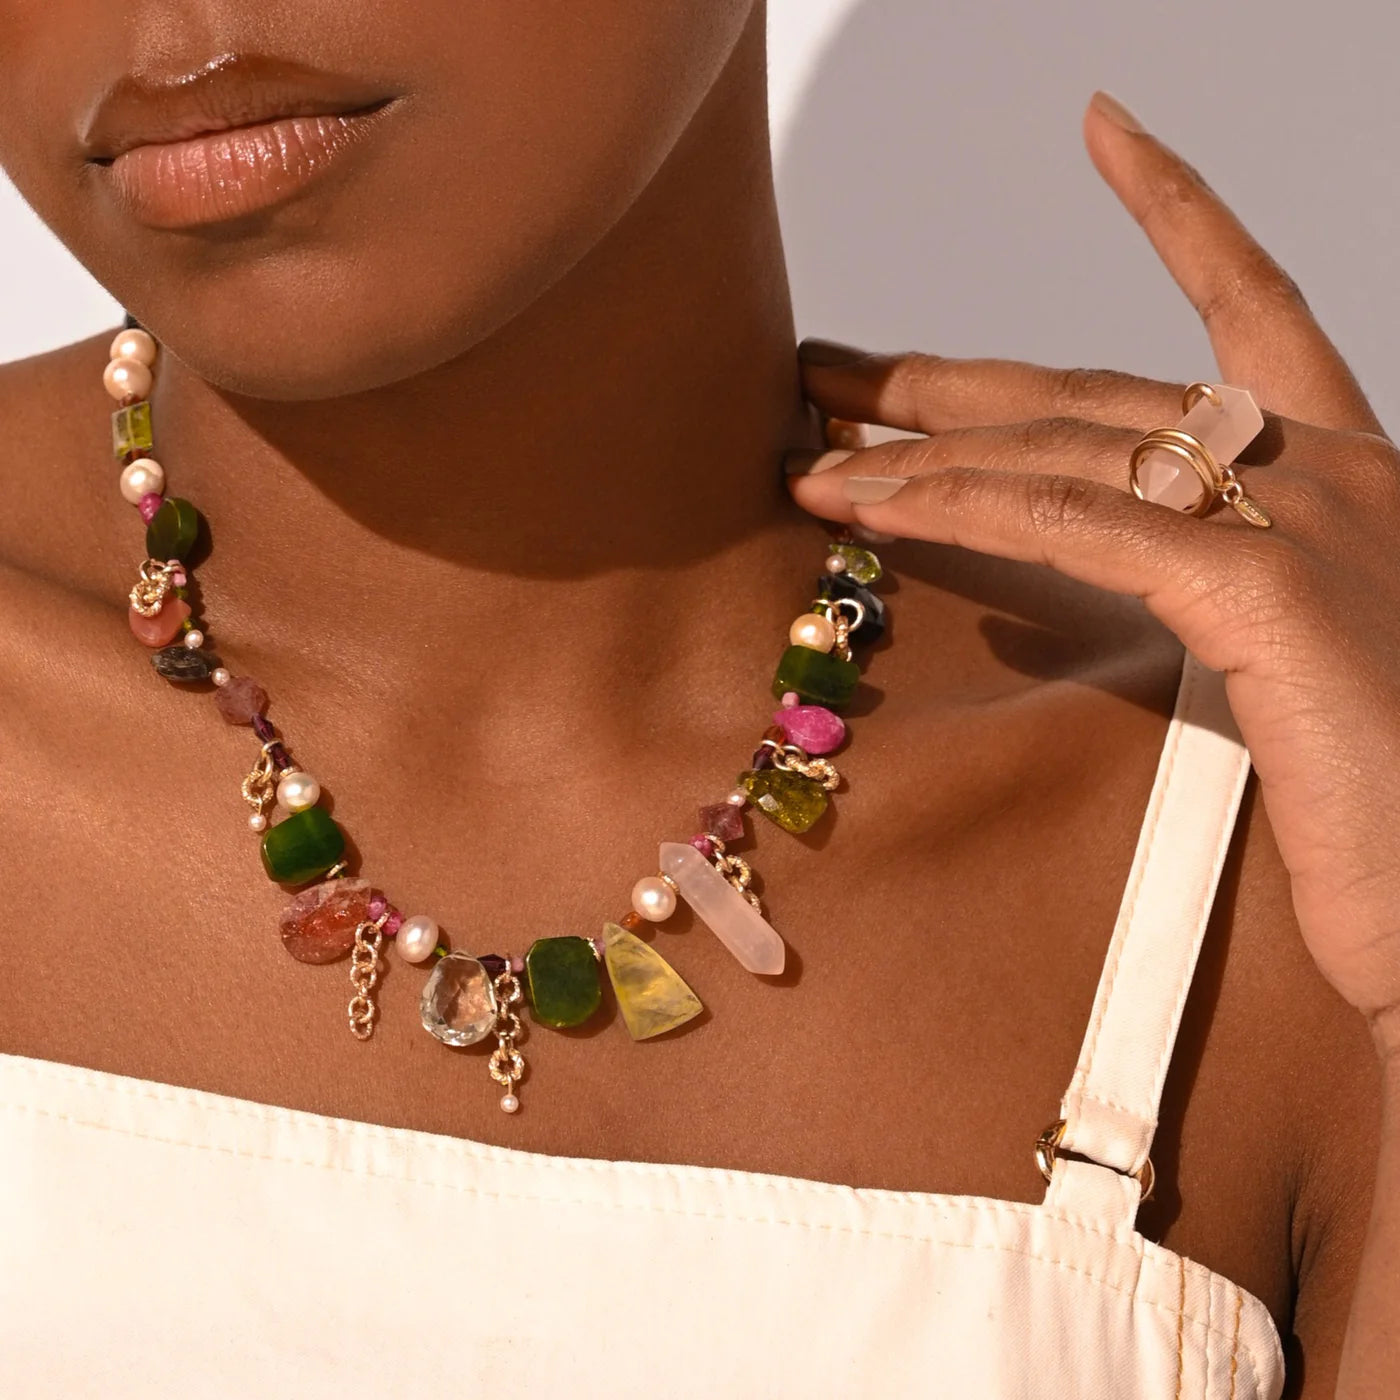 Buganvilla # 01 Necklace (amatista verde, granate, tsavorite, rodocrocita, jade, phrinite, hessonite, perla, cuarzo rosa, ruby, zafiro rosado, sun stone, cuarzo cherry)